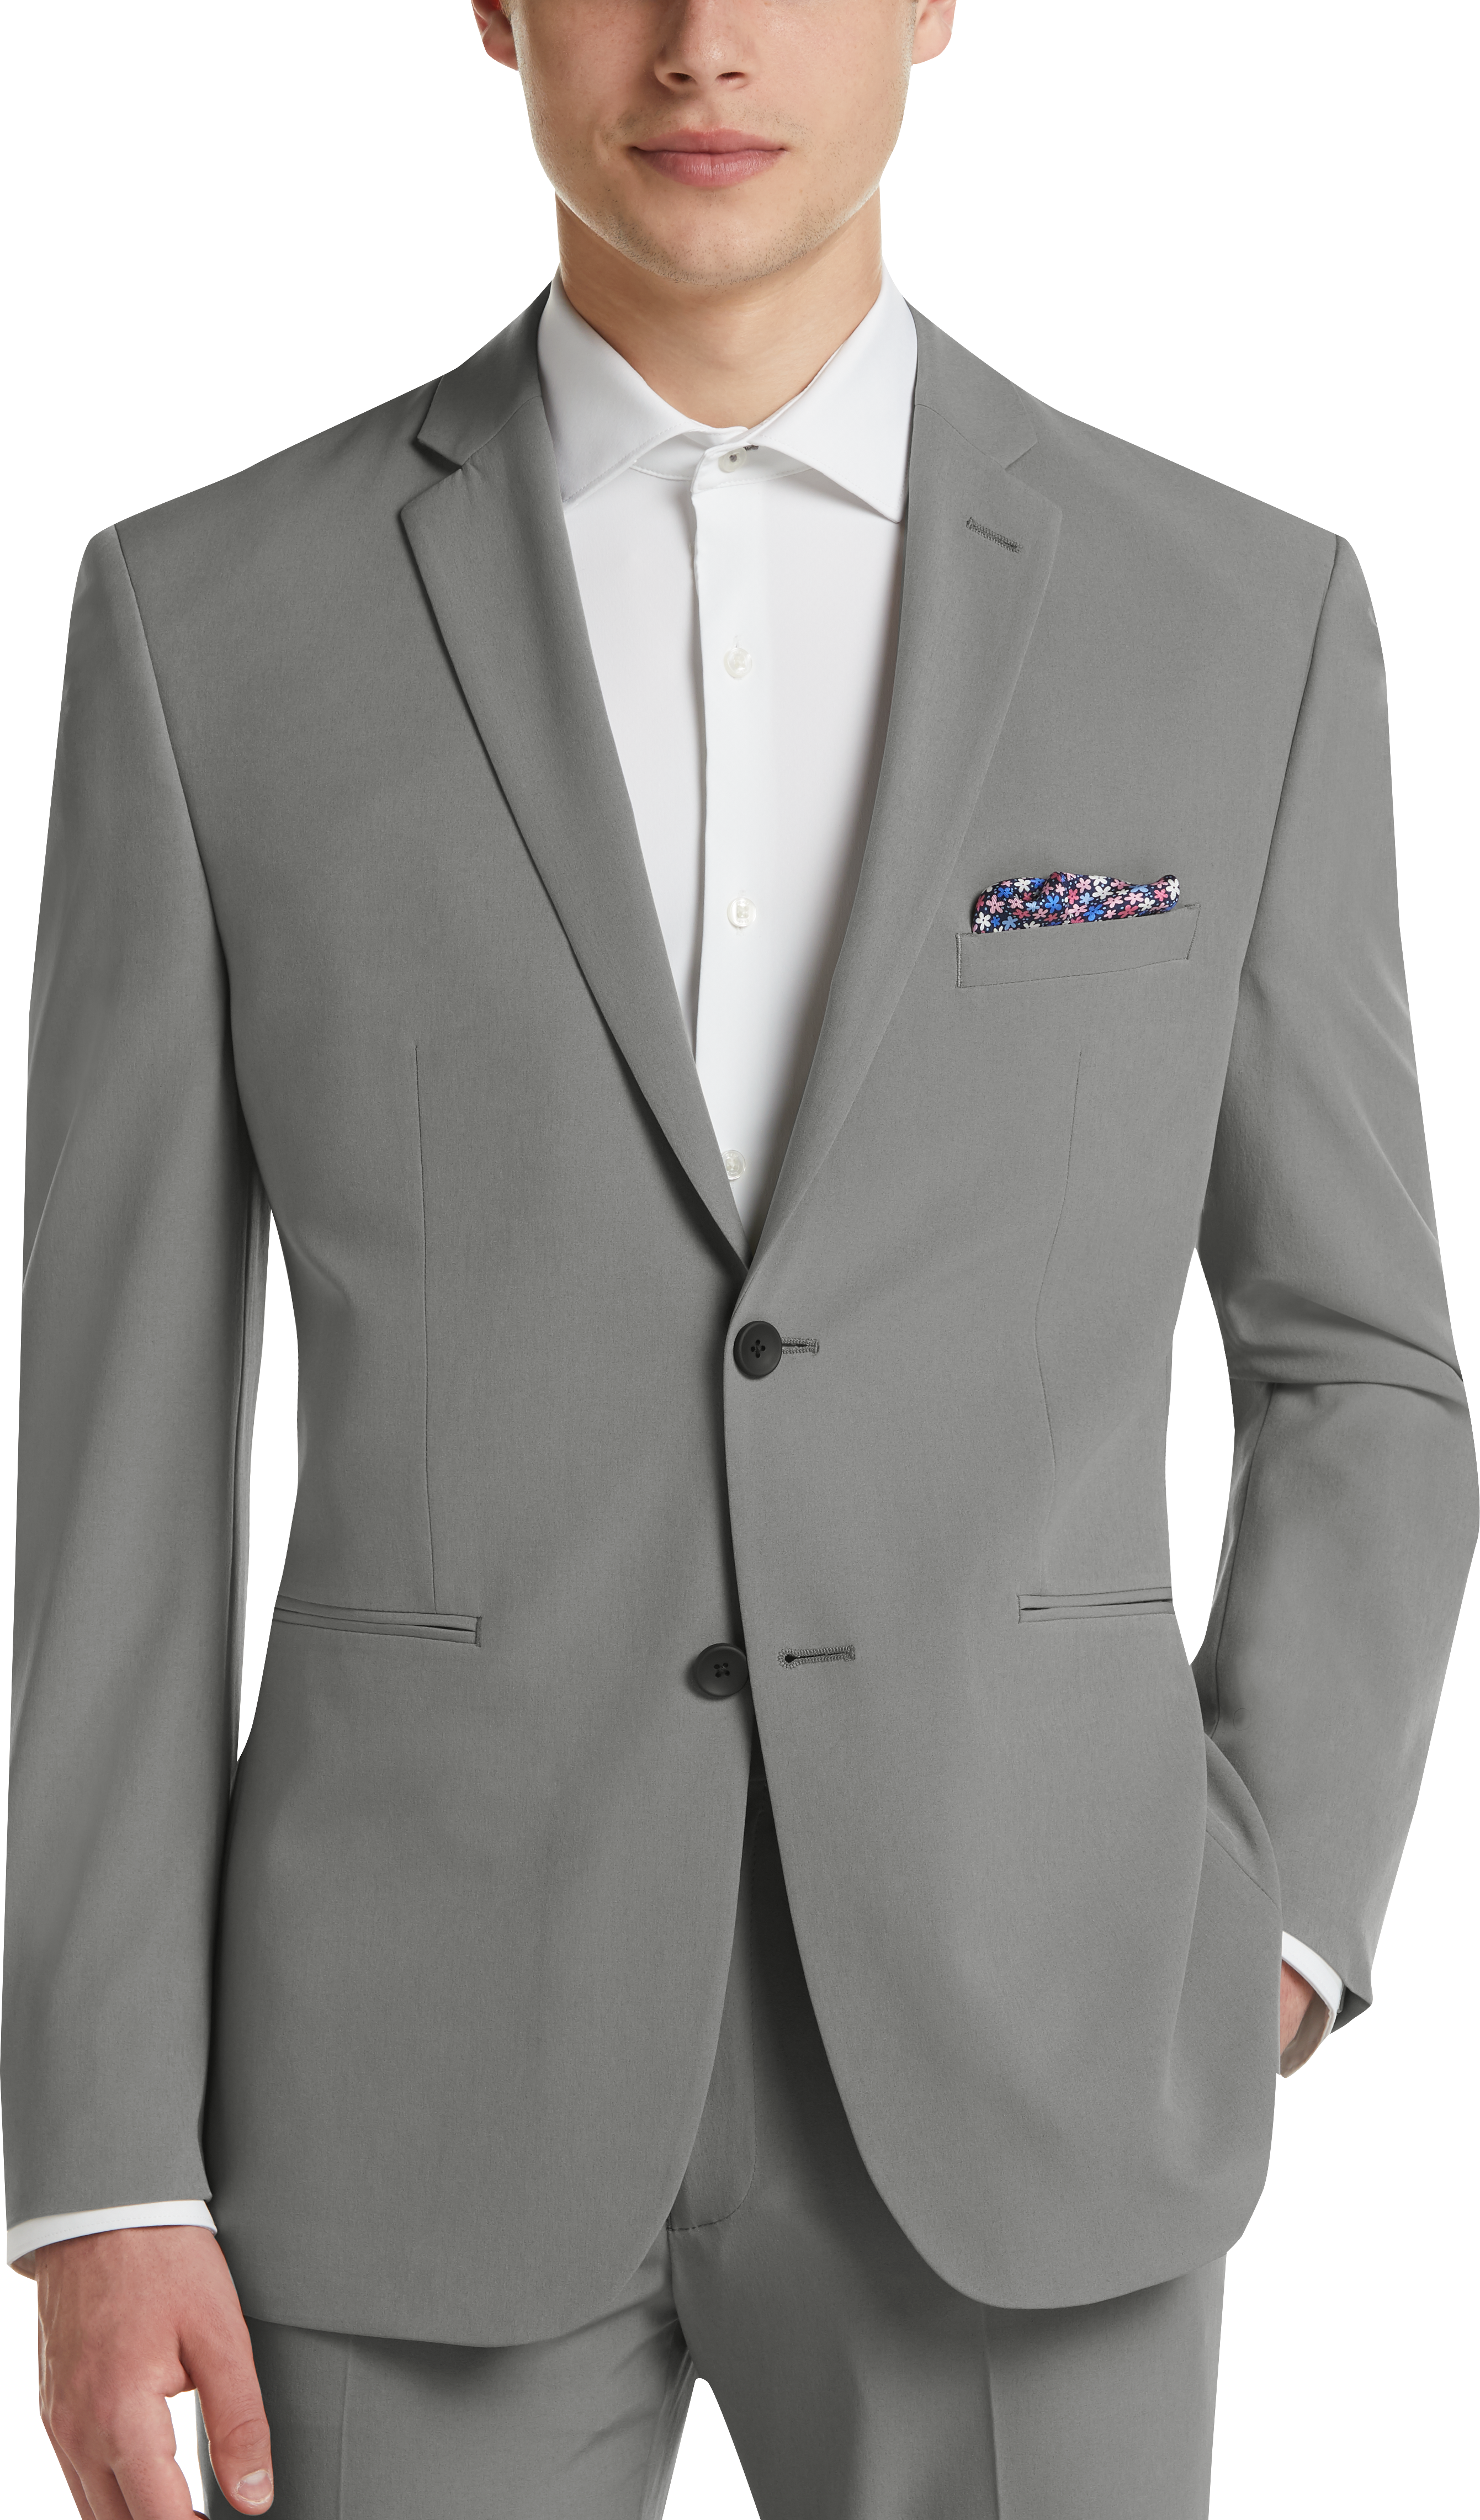 Perry Ellis Premium Light Gray Extreme Slim Fit Tech Suit - Men's Sale ...